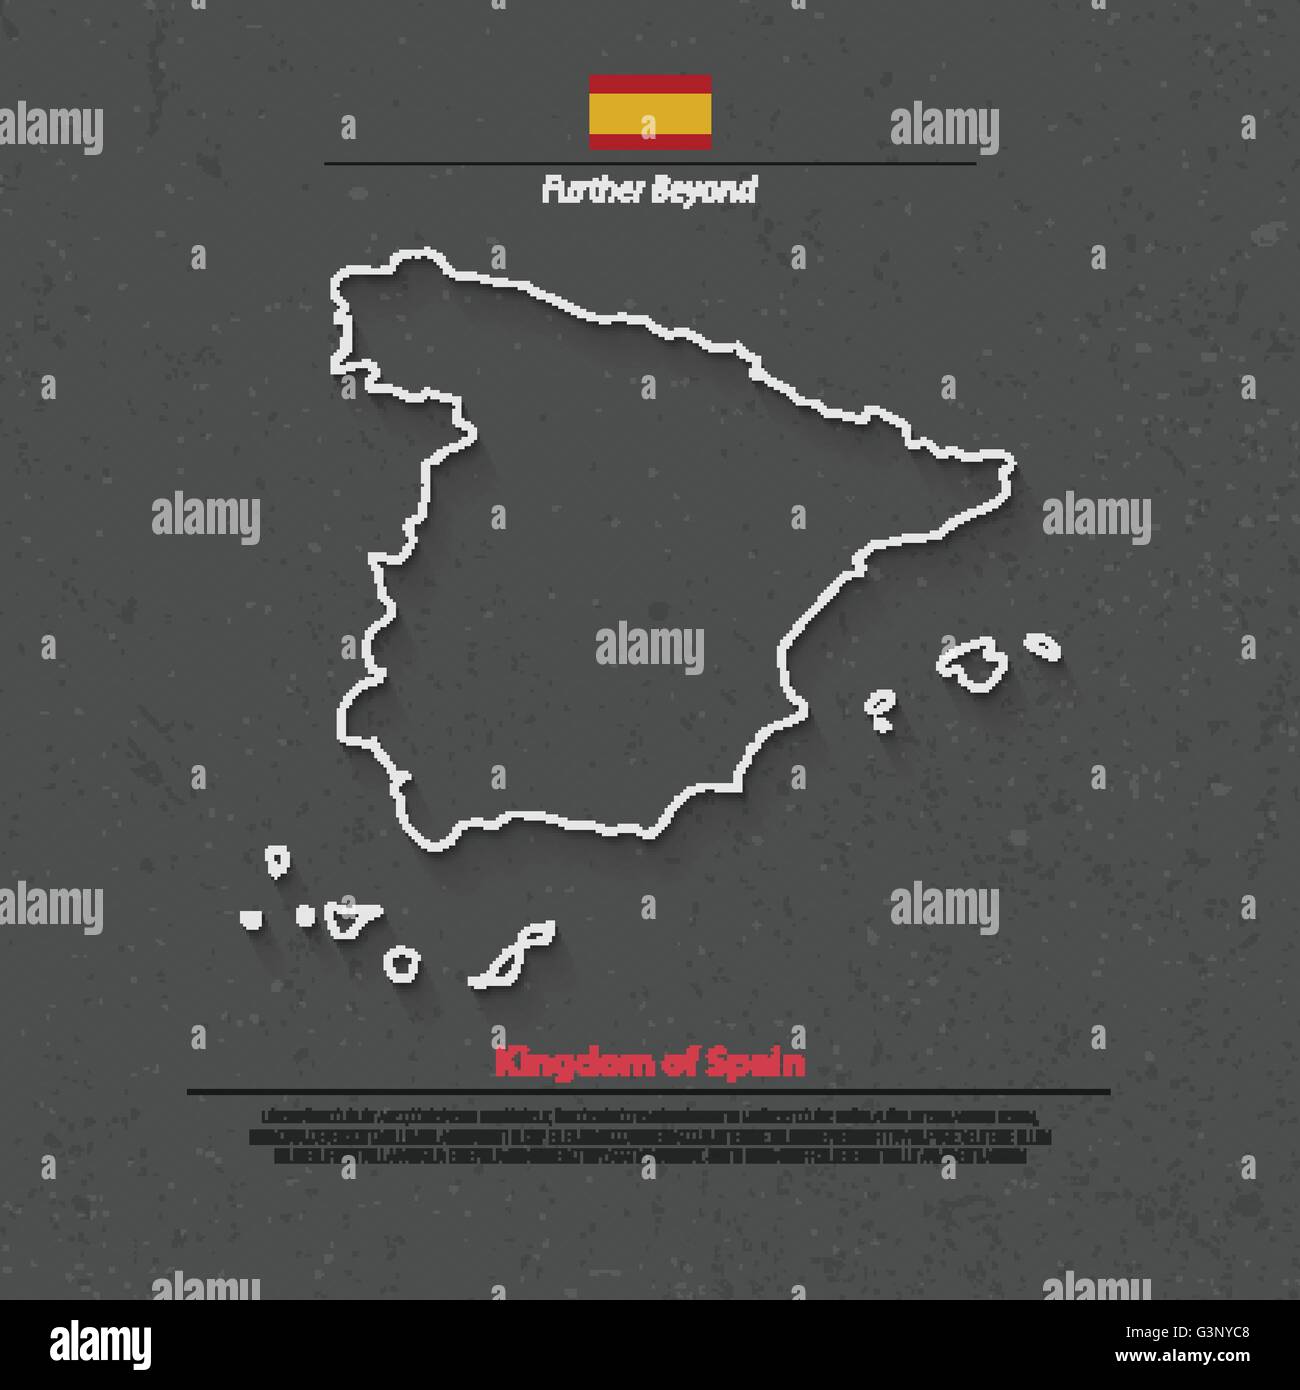 Königreich Spanien isoliert Karte und offizielle Flaggen-Icons. Vektor-spanische politische Kartensymbol dünne Linie über Grunge Hintergrund. EU-ge Stock Vektor